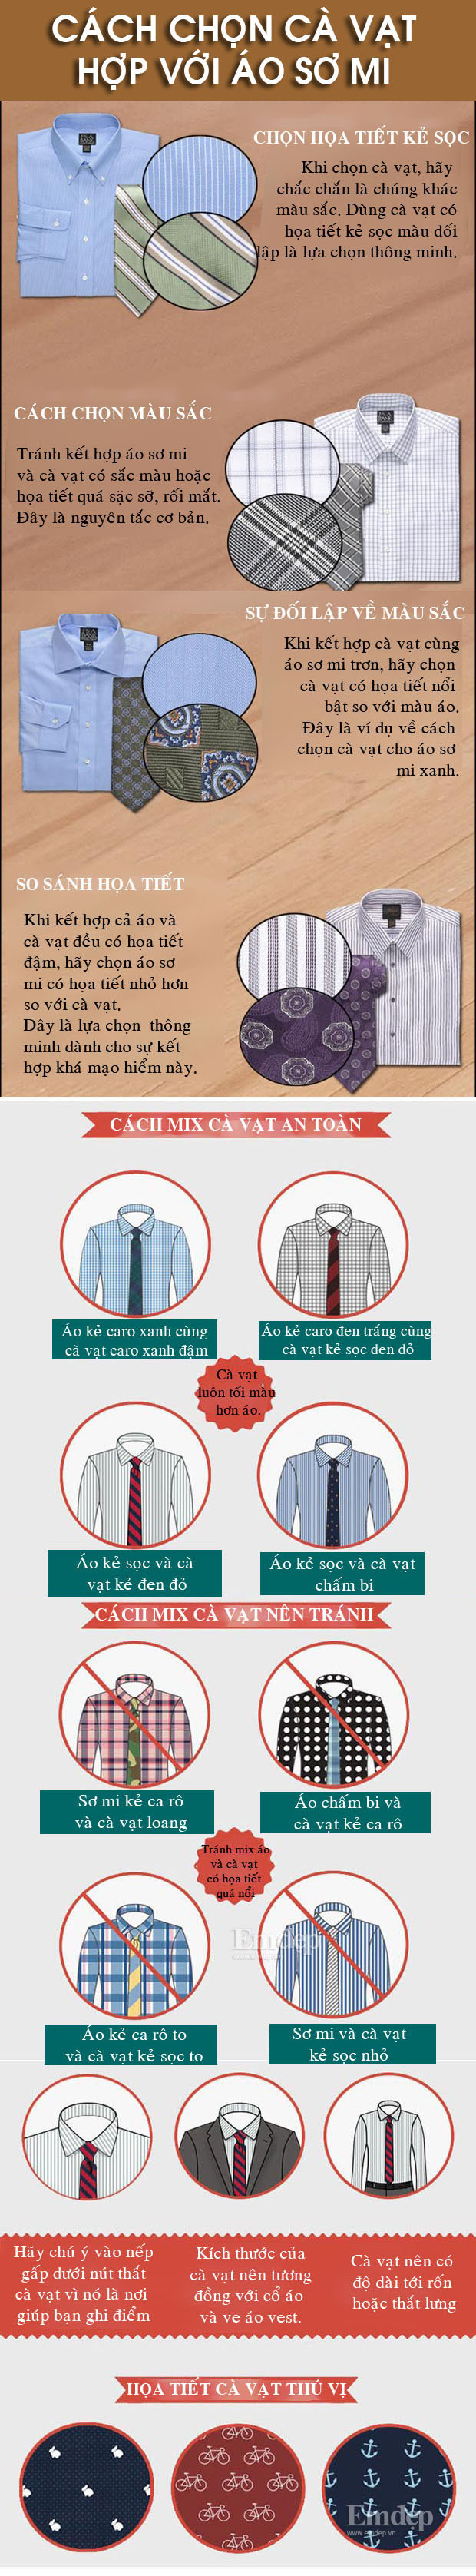 15 nguyên tắc cơ bản chọn cà vạt hợp áo sơ mi